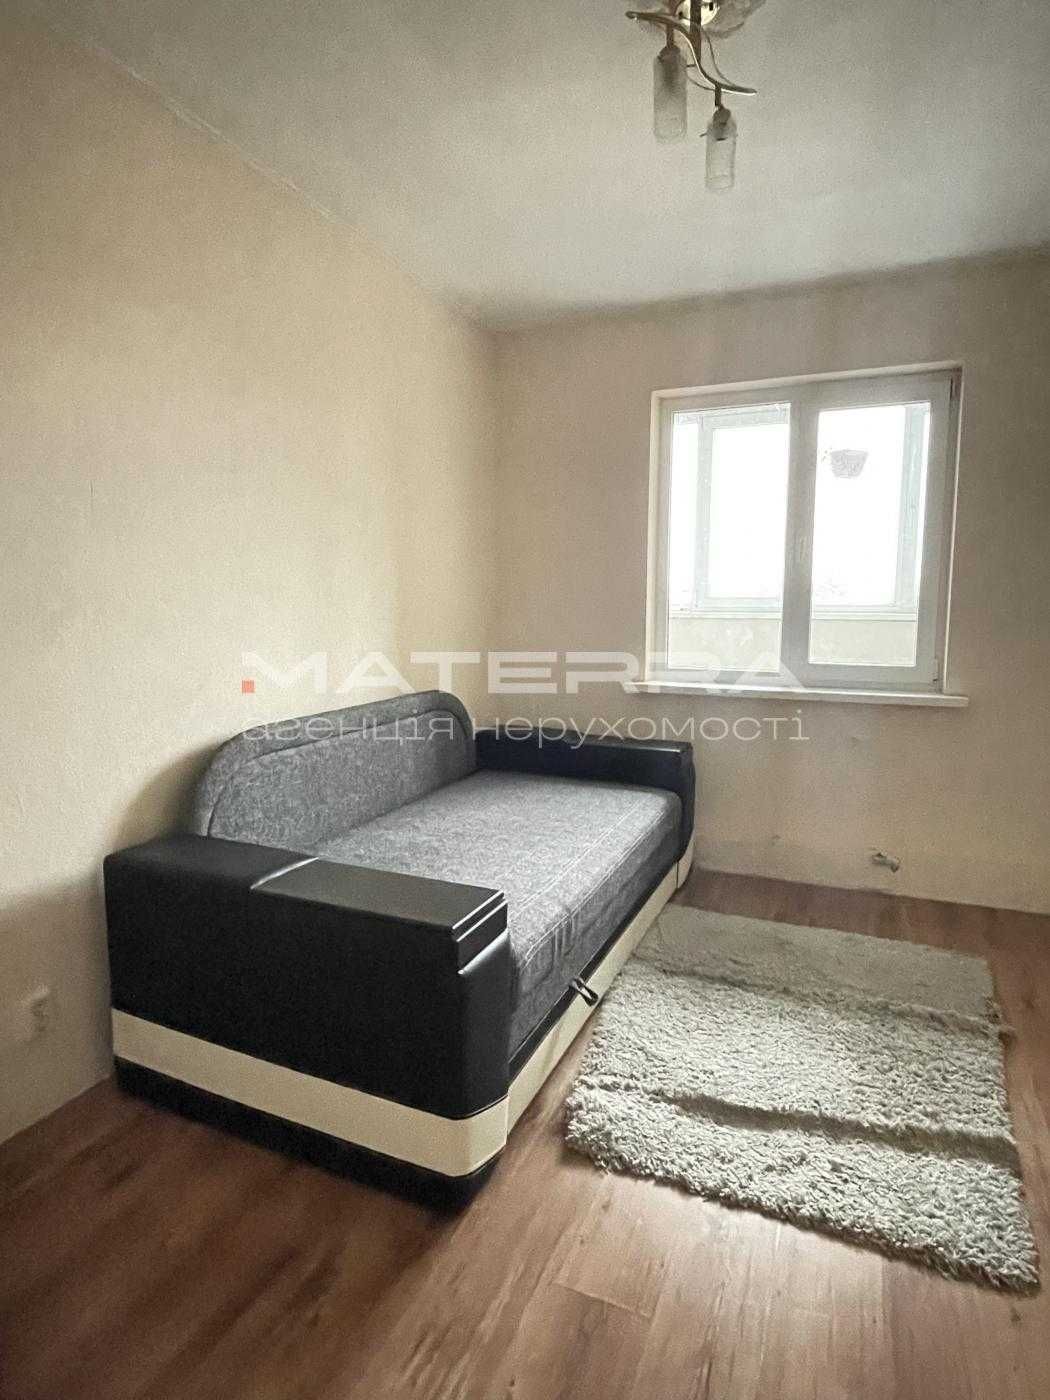 Продам 2-х кімнатну квартиру в центрі Білогородки, 55 м2